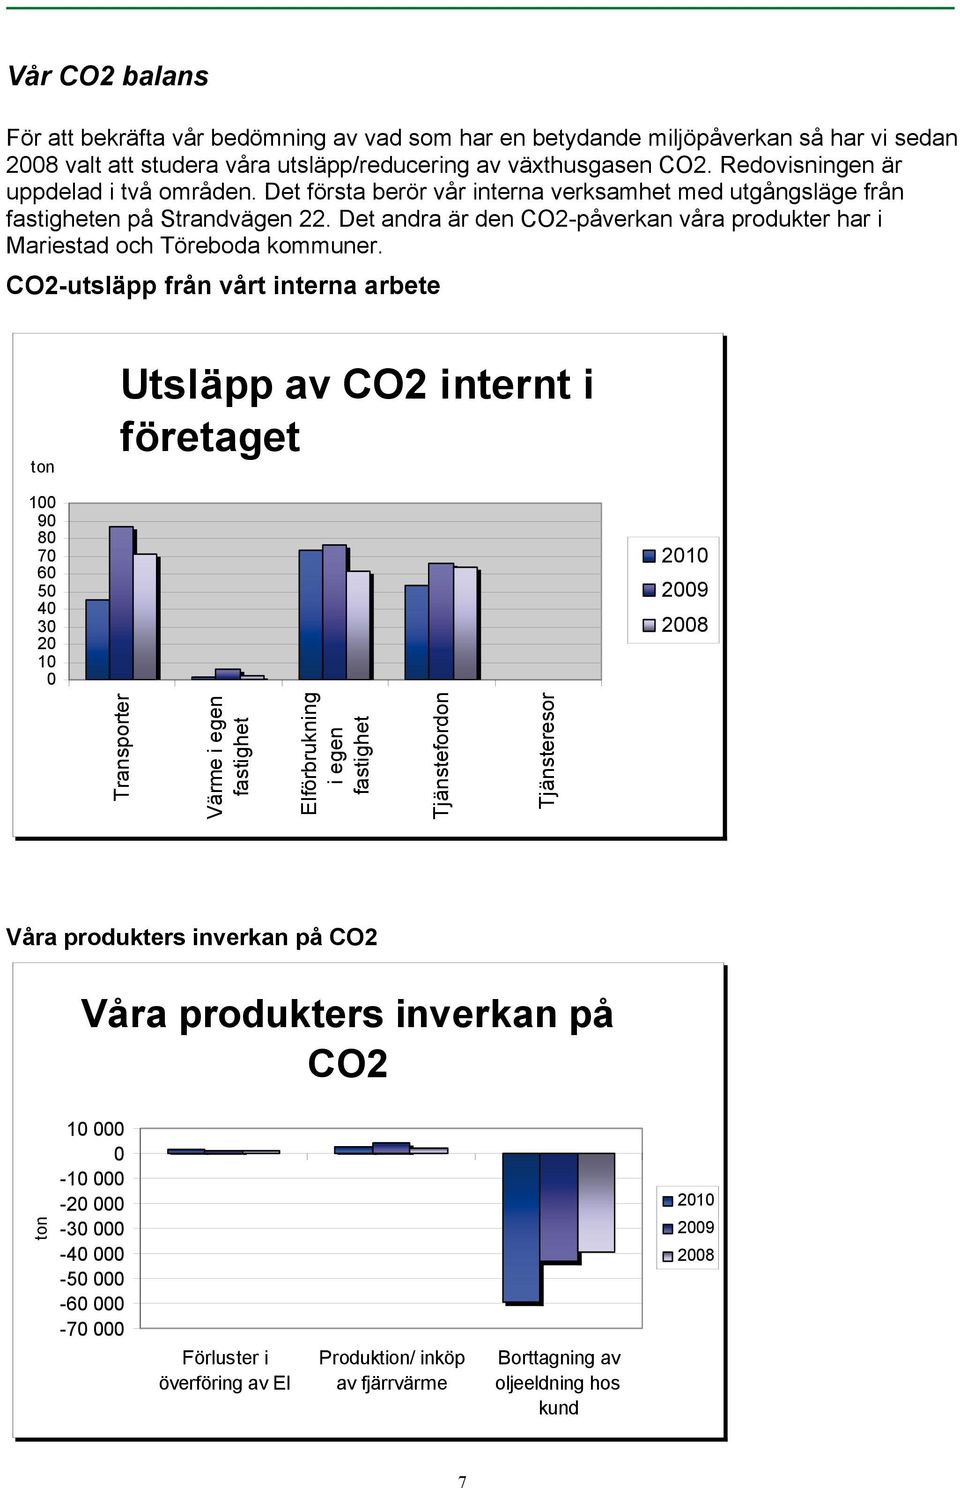 Det andra är den CO2-påverkan våra produkter har i Mariestad och Töreboda kommuner.